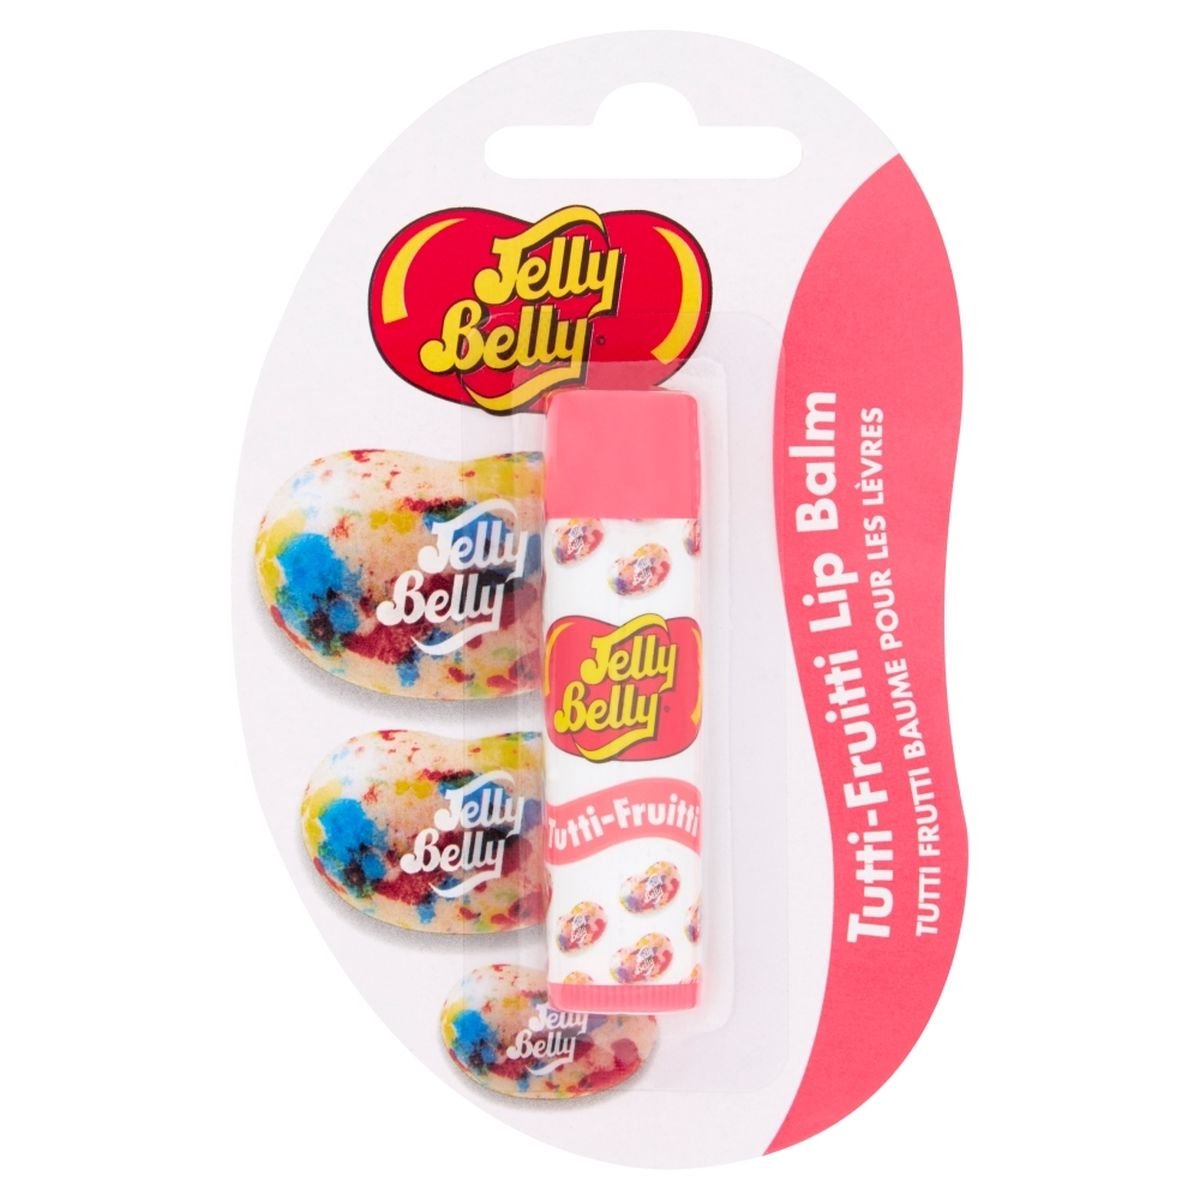 Jellies для губ. Бальзам для губ Джелли Белли. Jelly belly тинт для губ. Jelly belly оттеночный бальзам для губ.